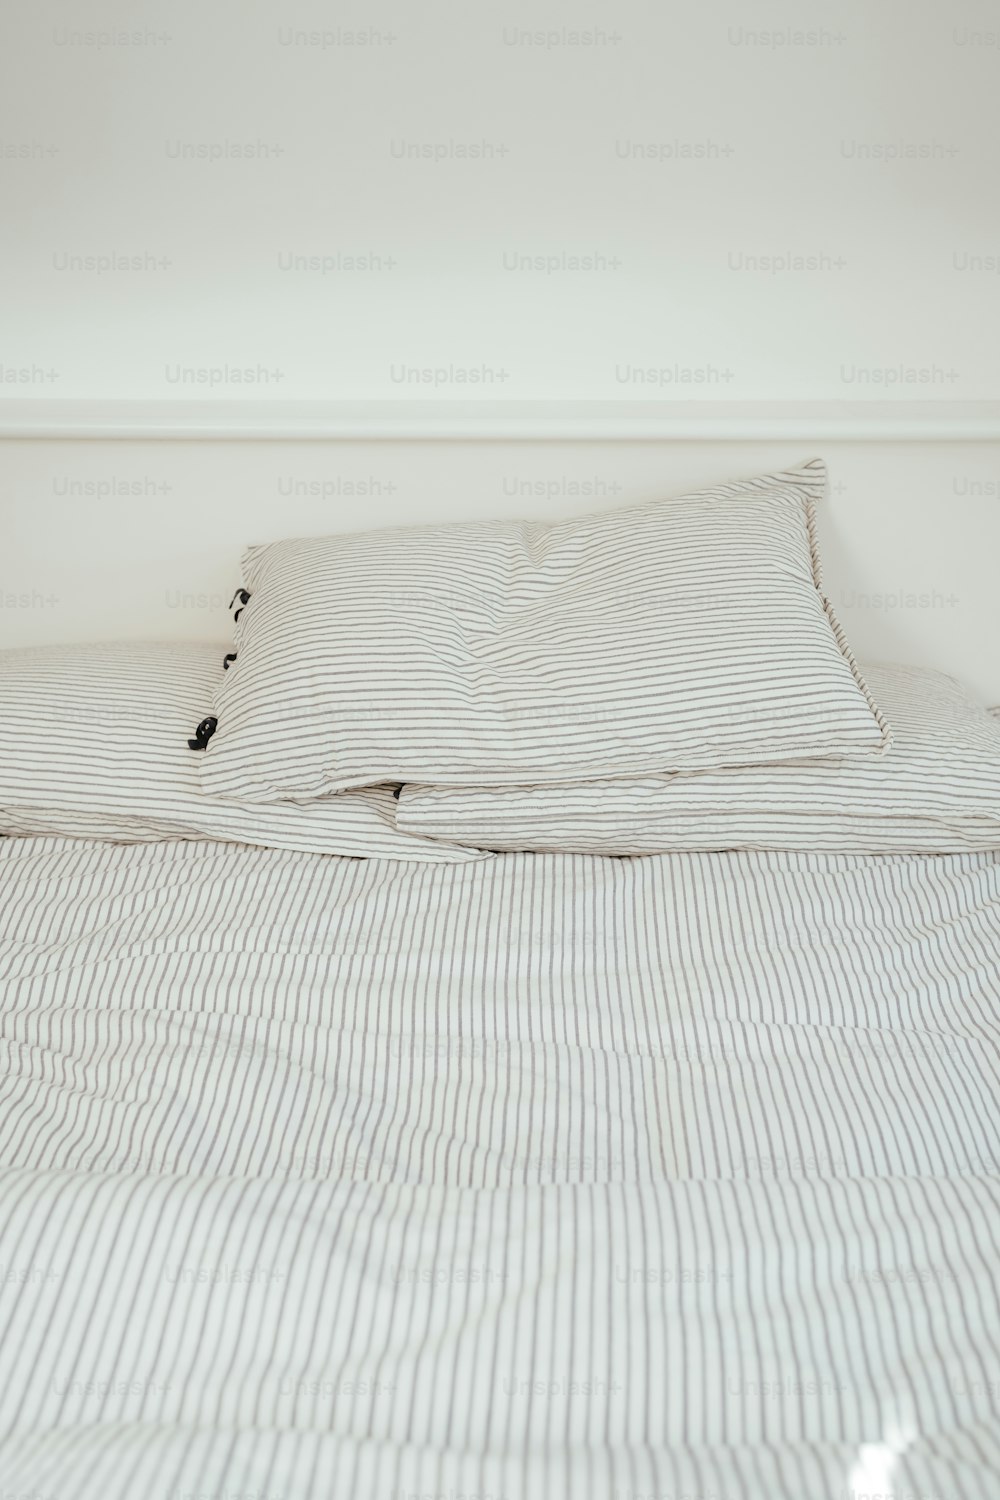 un lit avec une couette rayée blanche et noire